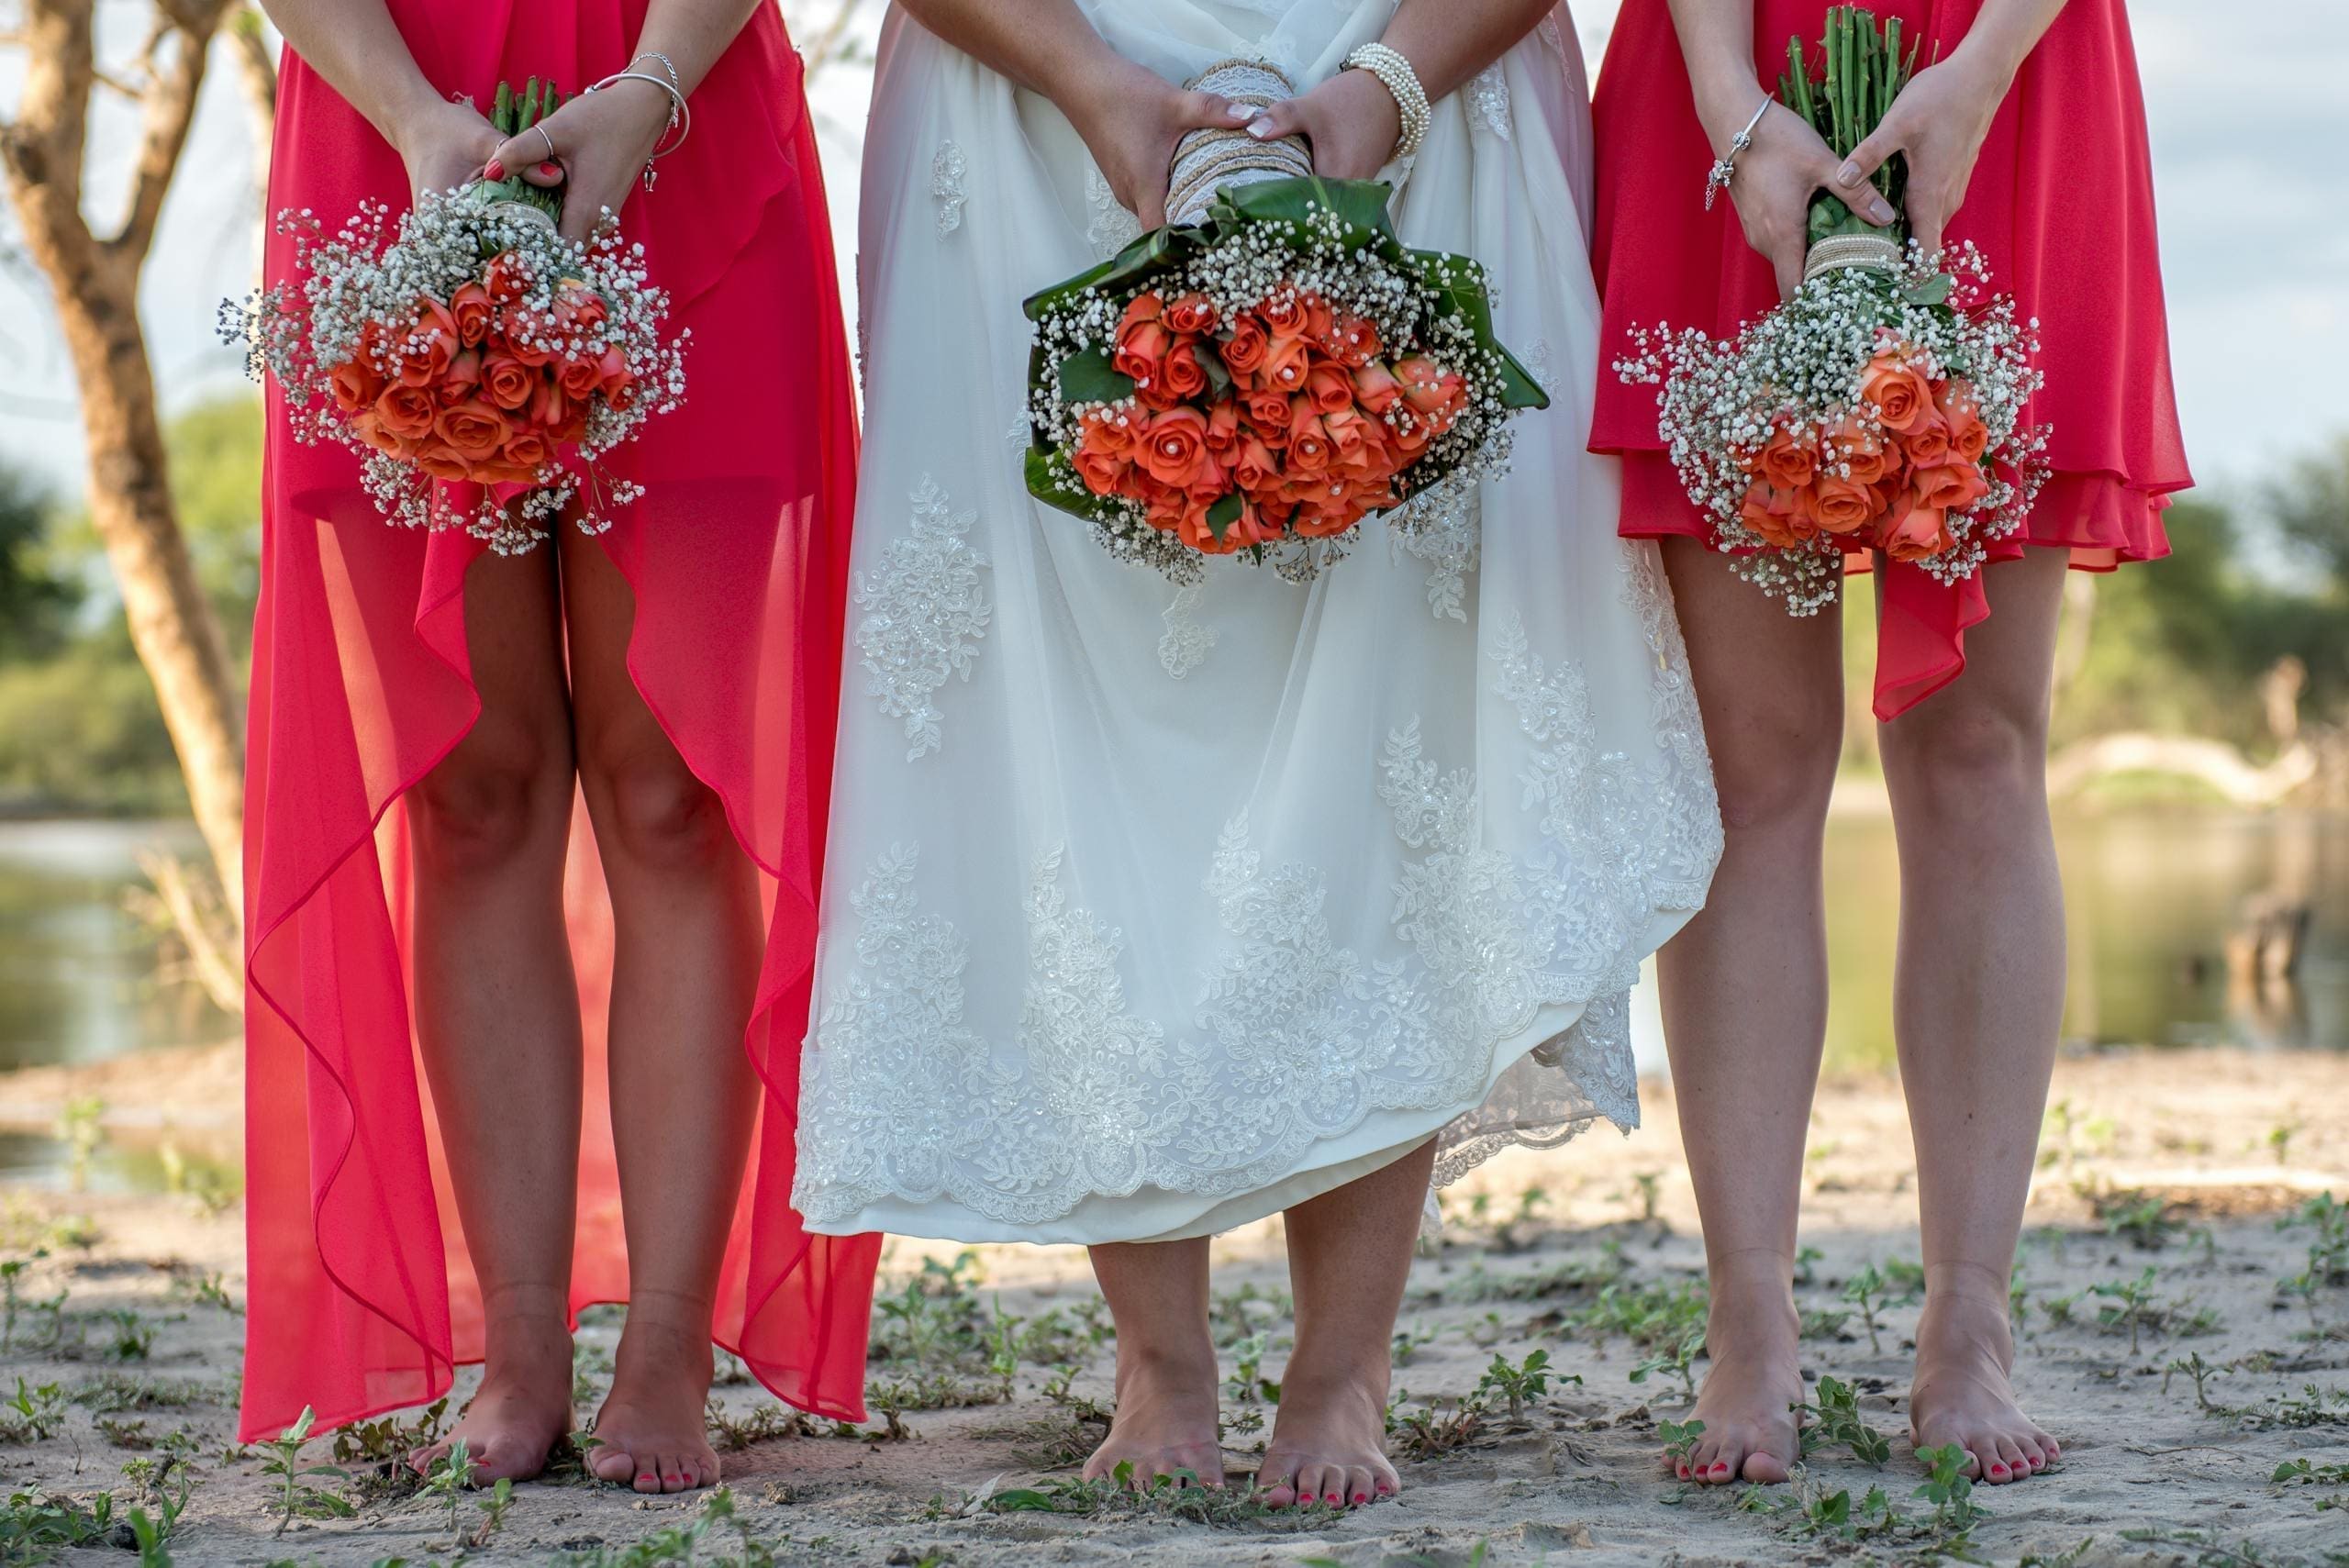 Bridesmaid Dresses for a Destination Wedding